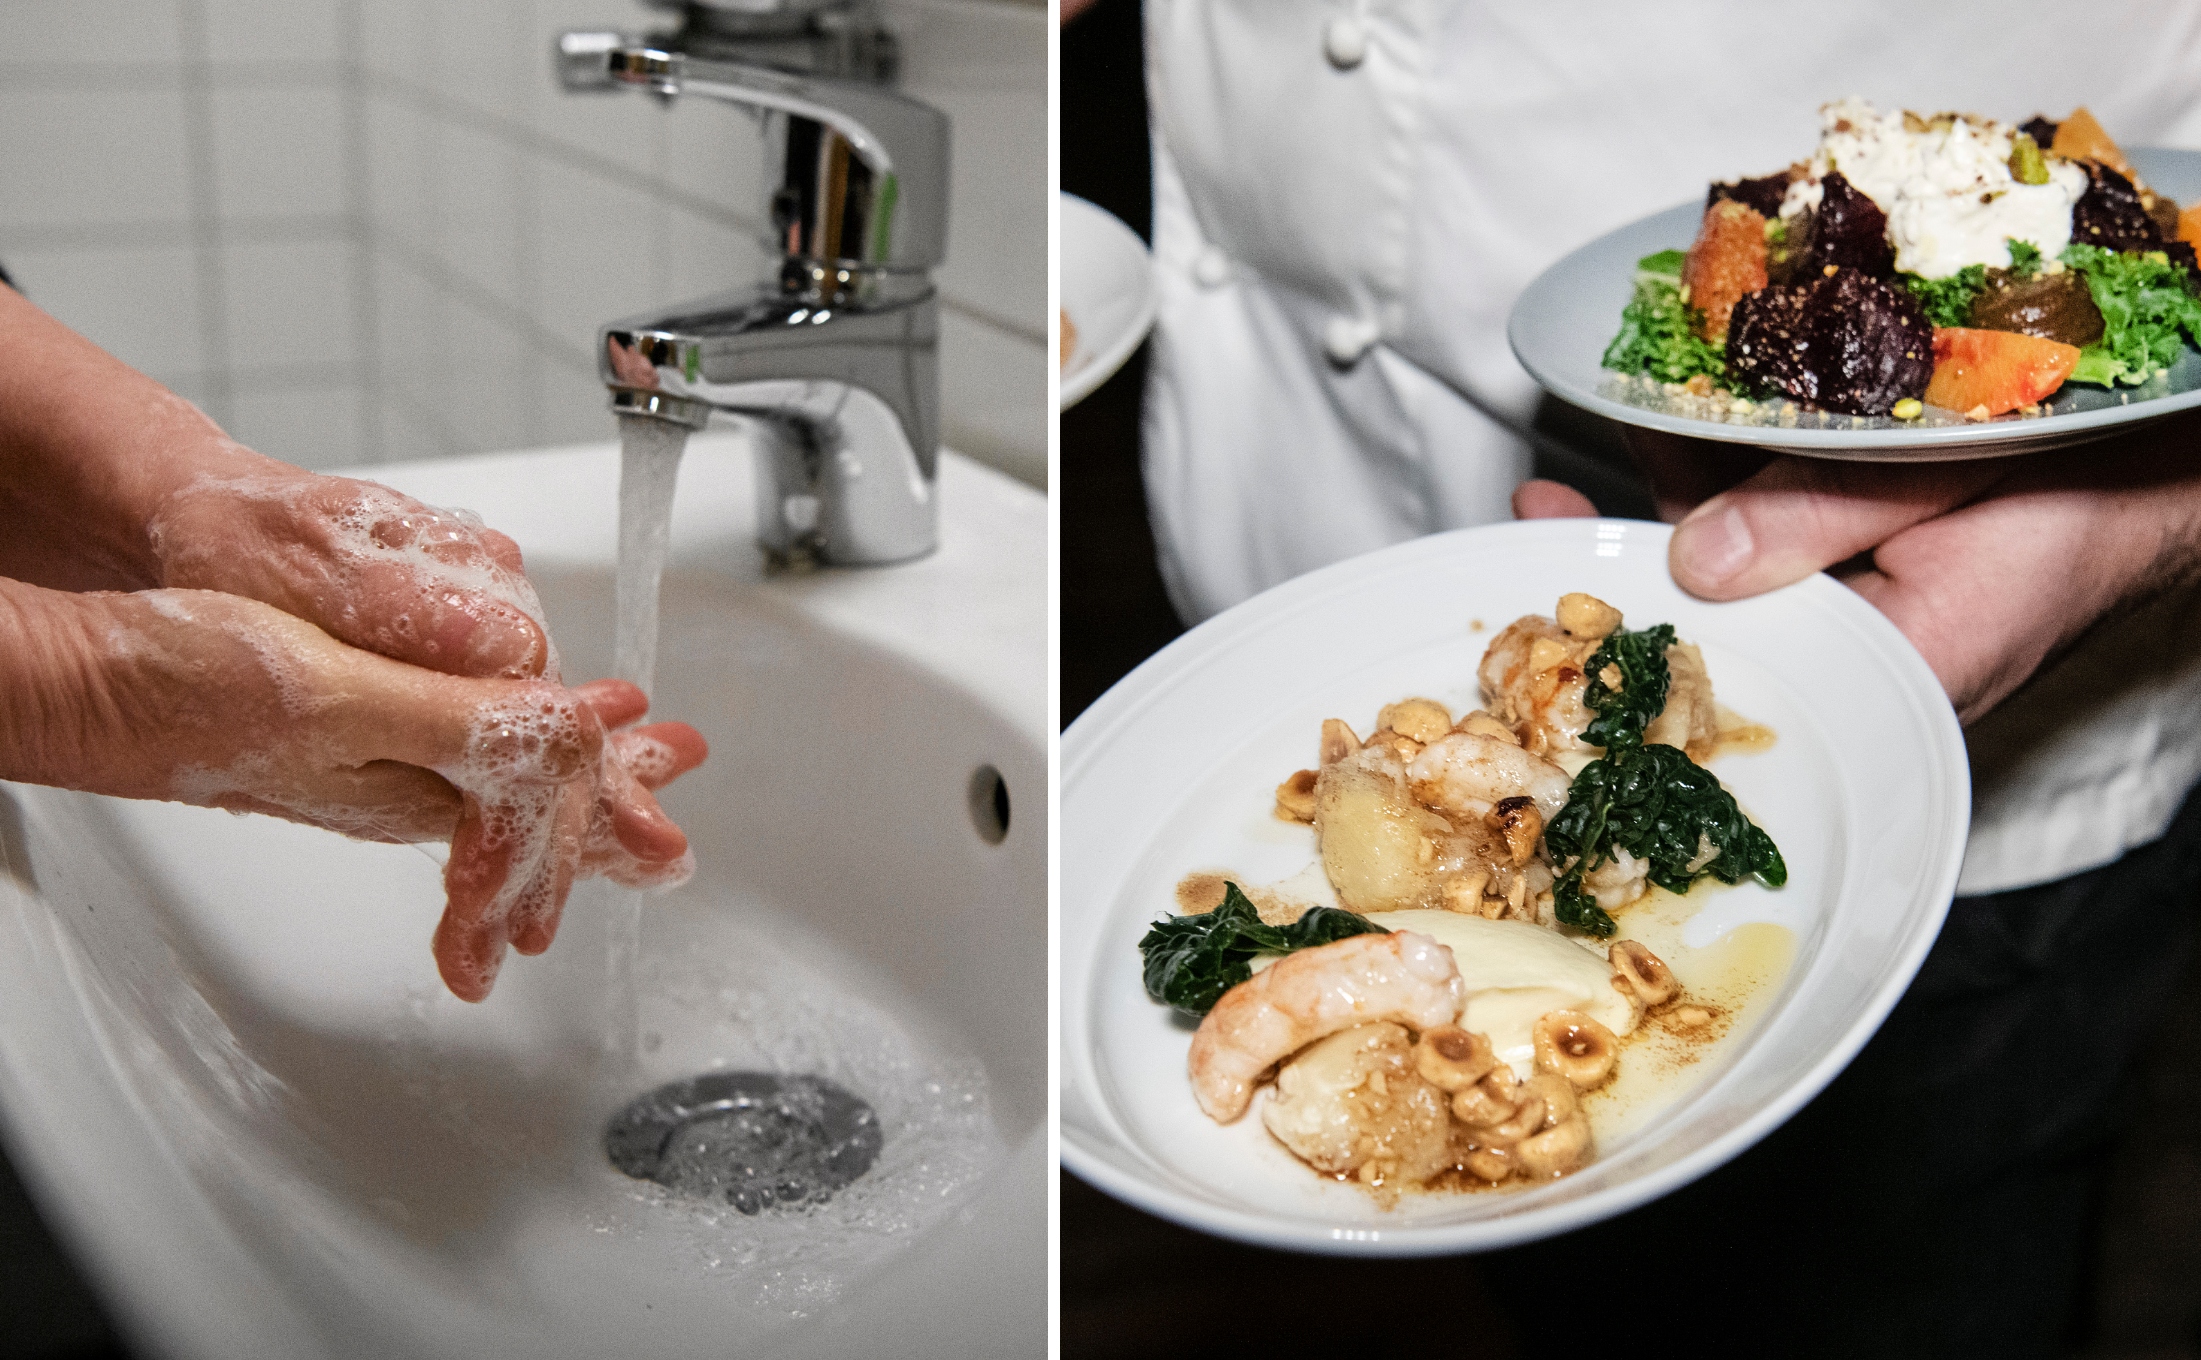 bristande hygien hos personalen på populär restaurang – använde inte tvål